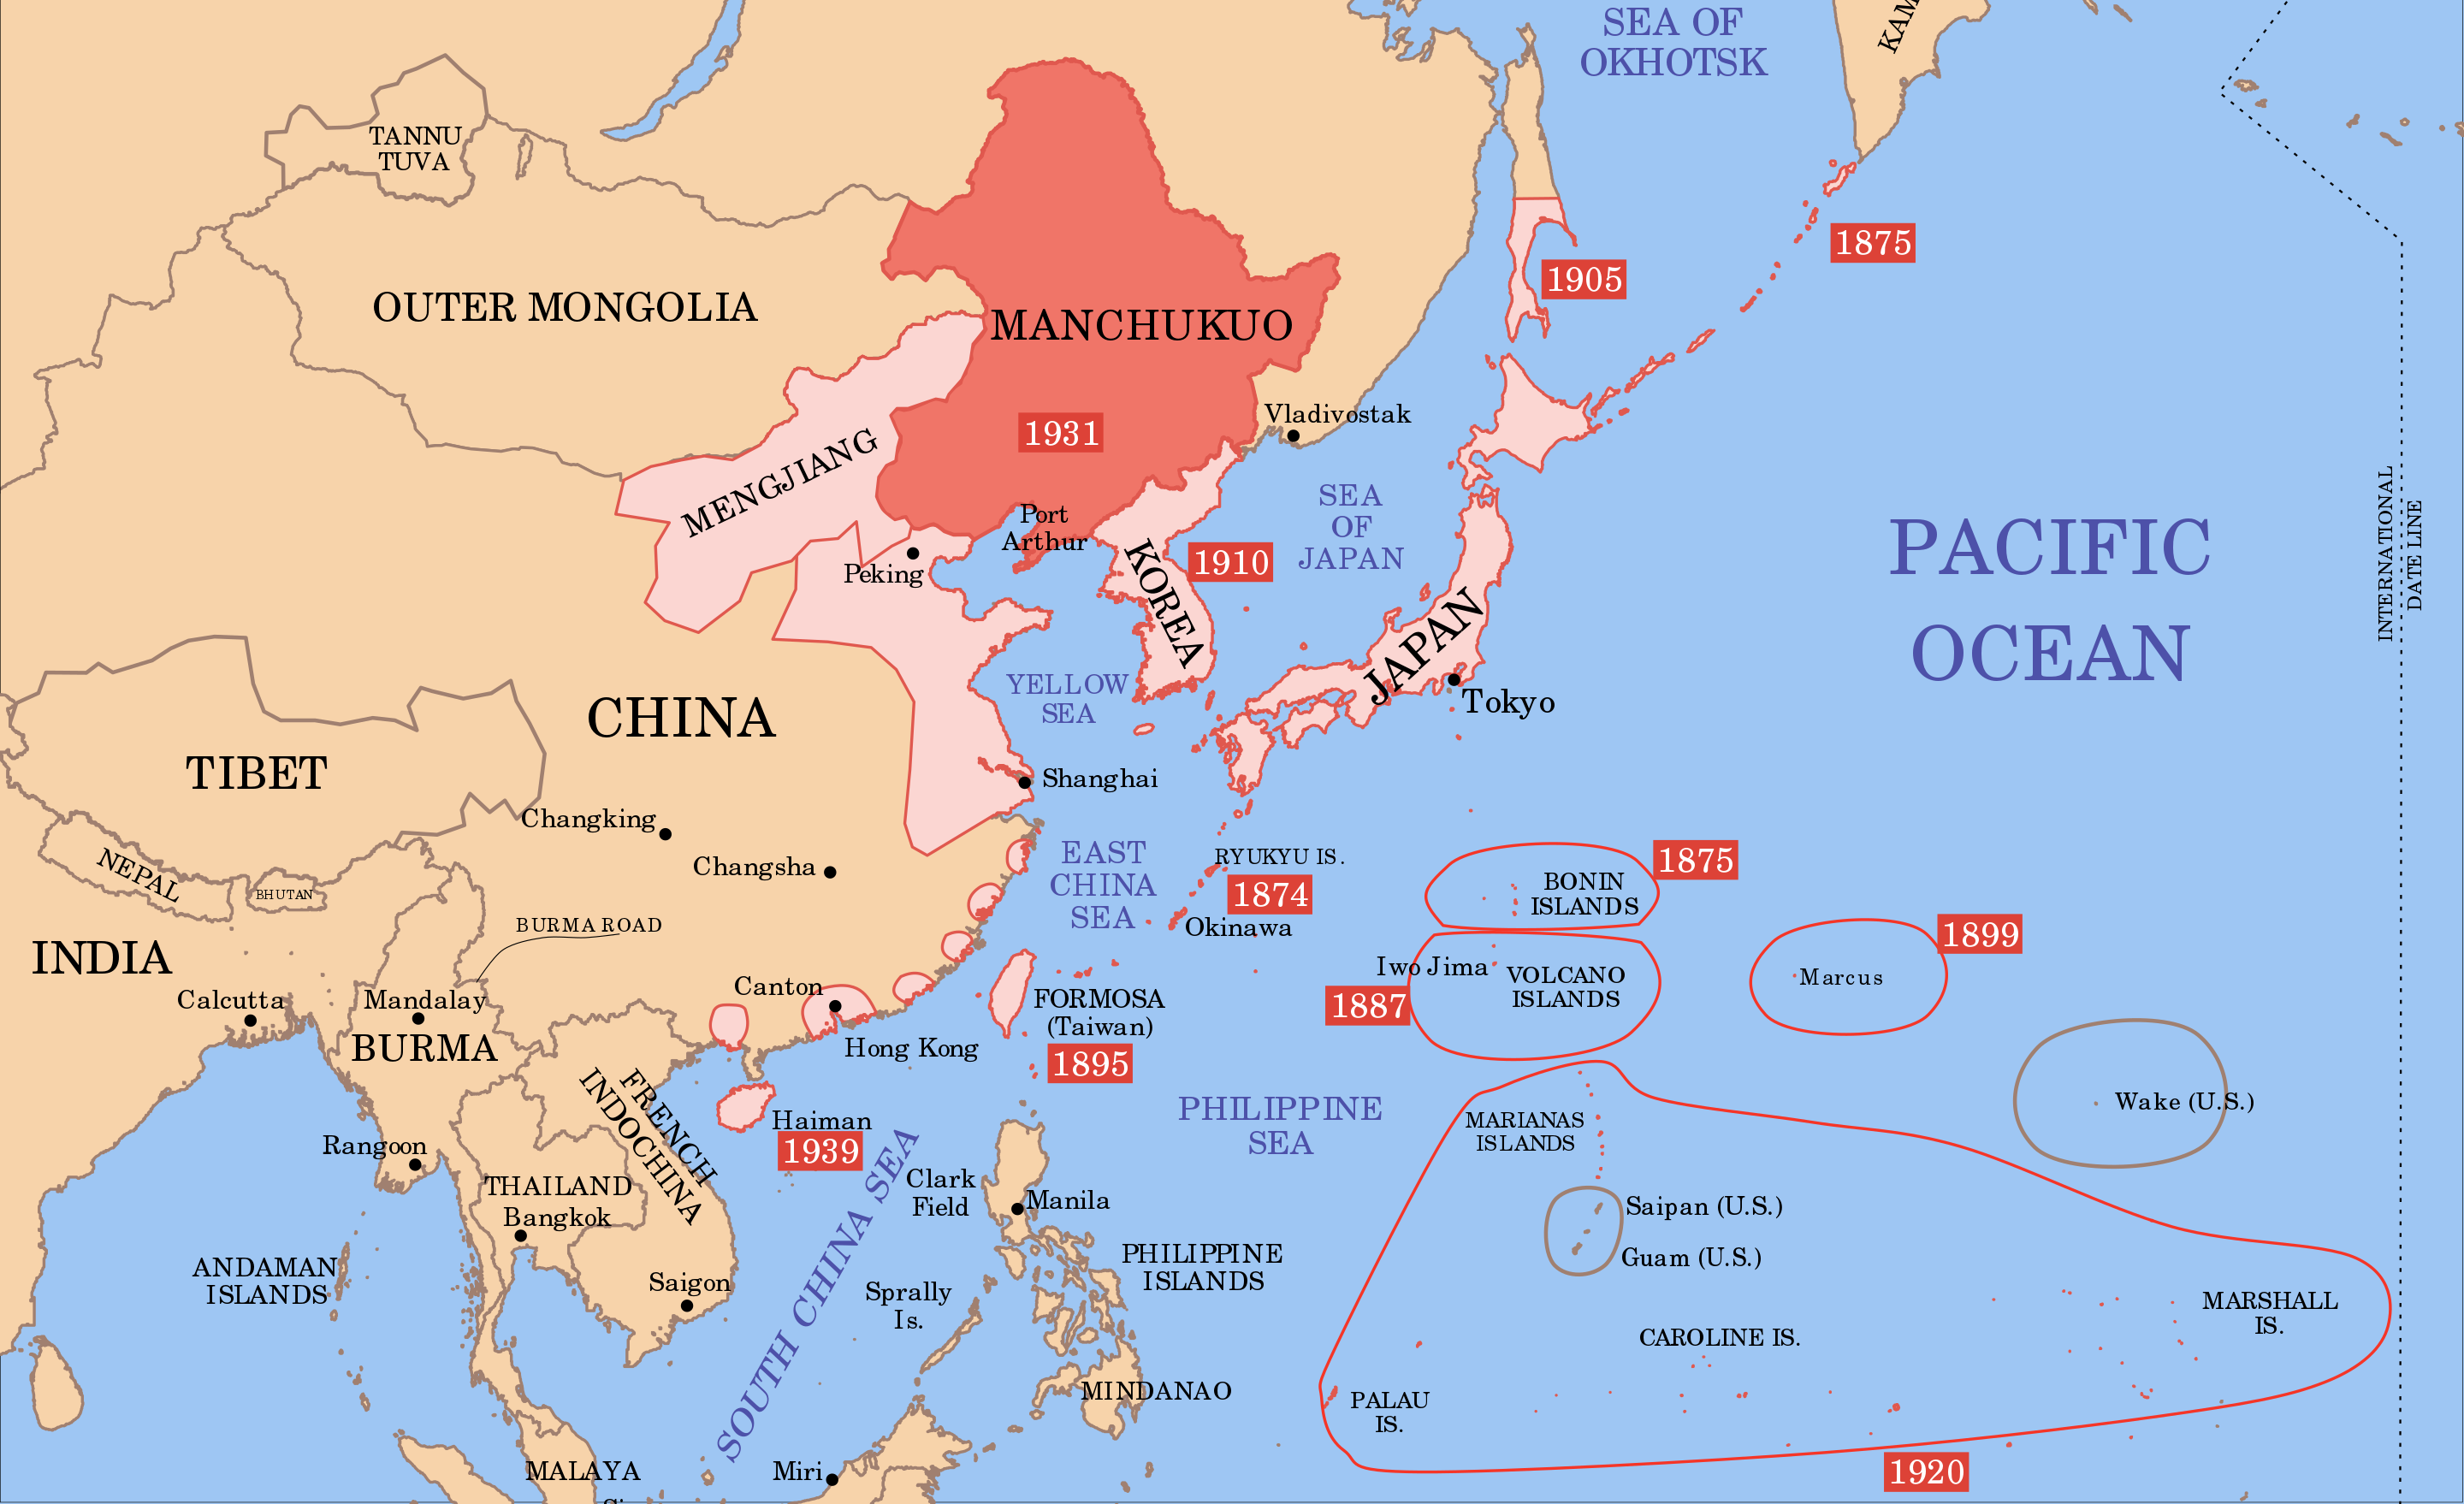 Territorio controlado por Japón